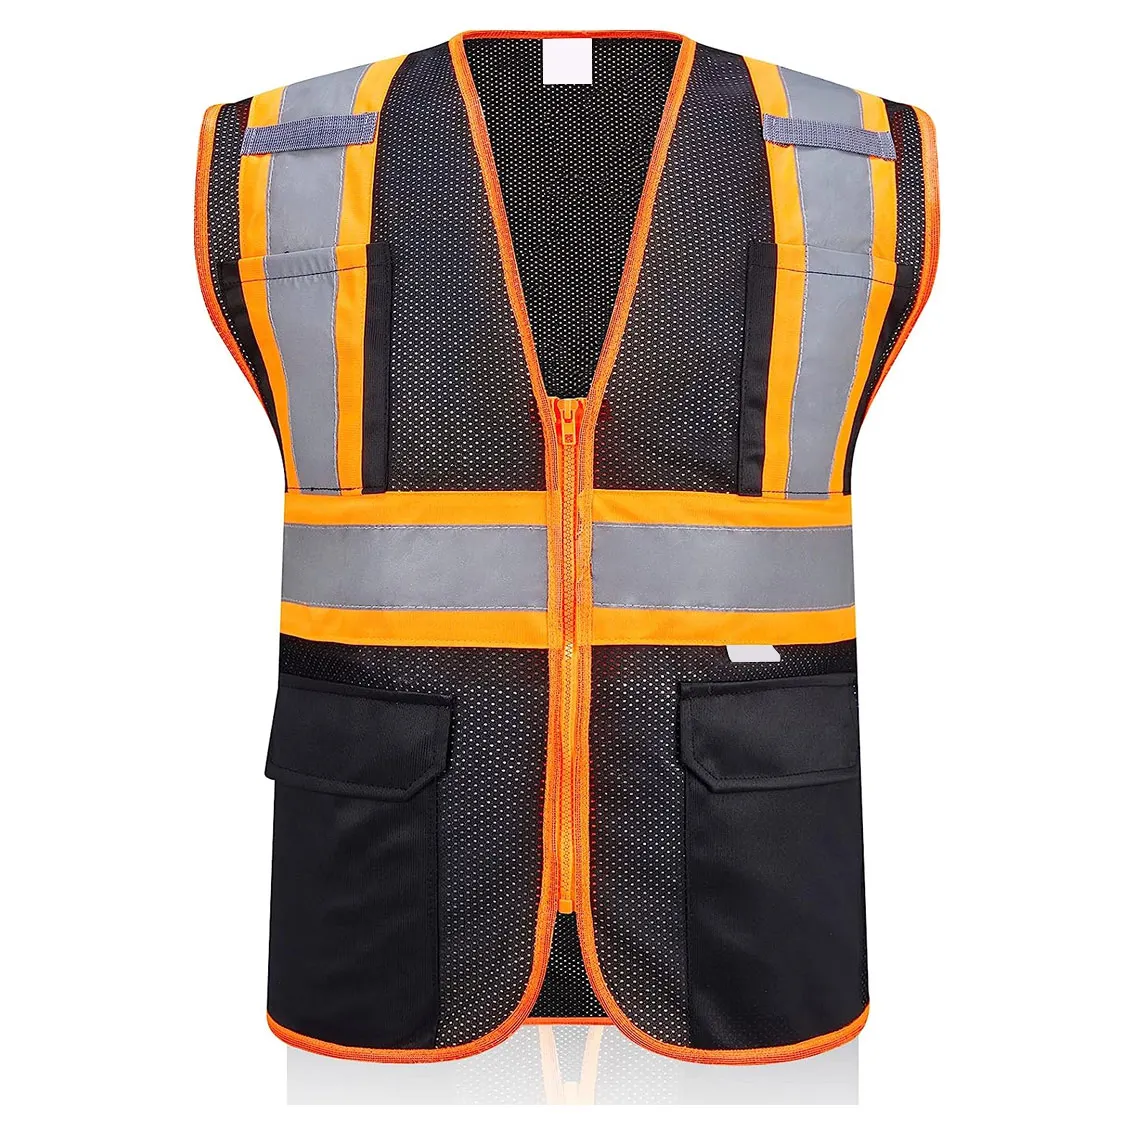 Bestseller Led Flashing Vest Safety Engineer Construction Vest Breathable Hi Vis Mesh Construction Reflective Security Vest